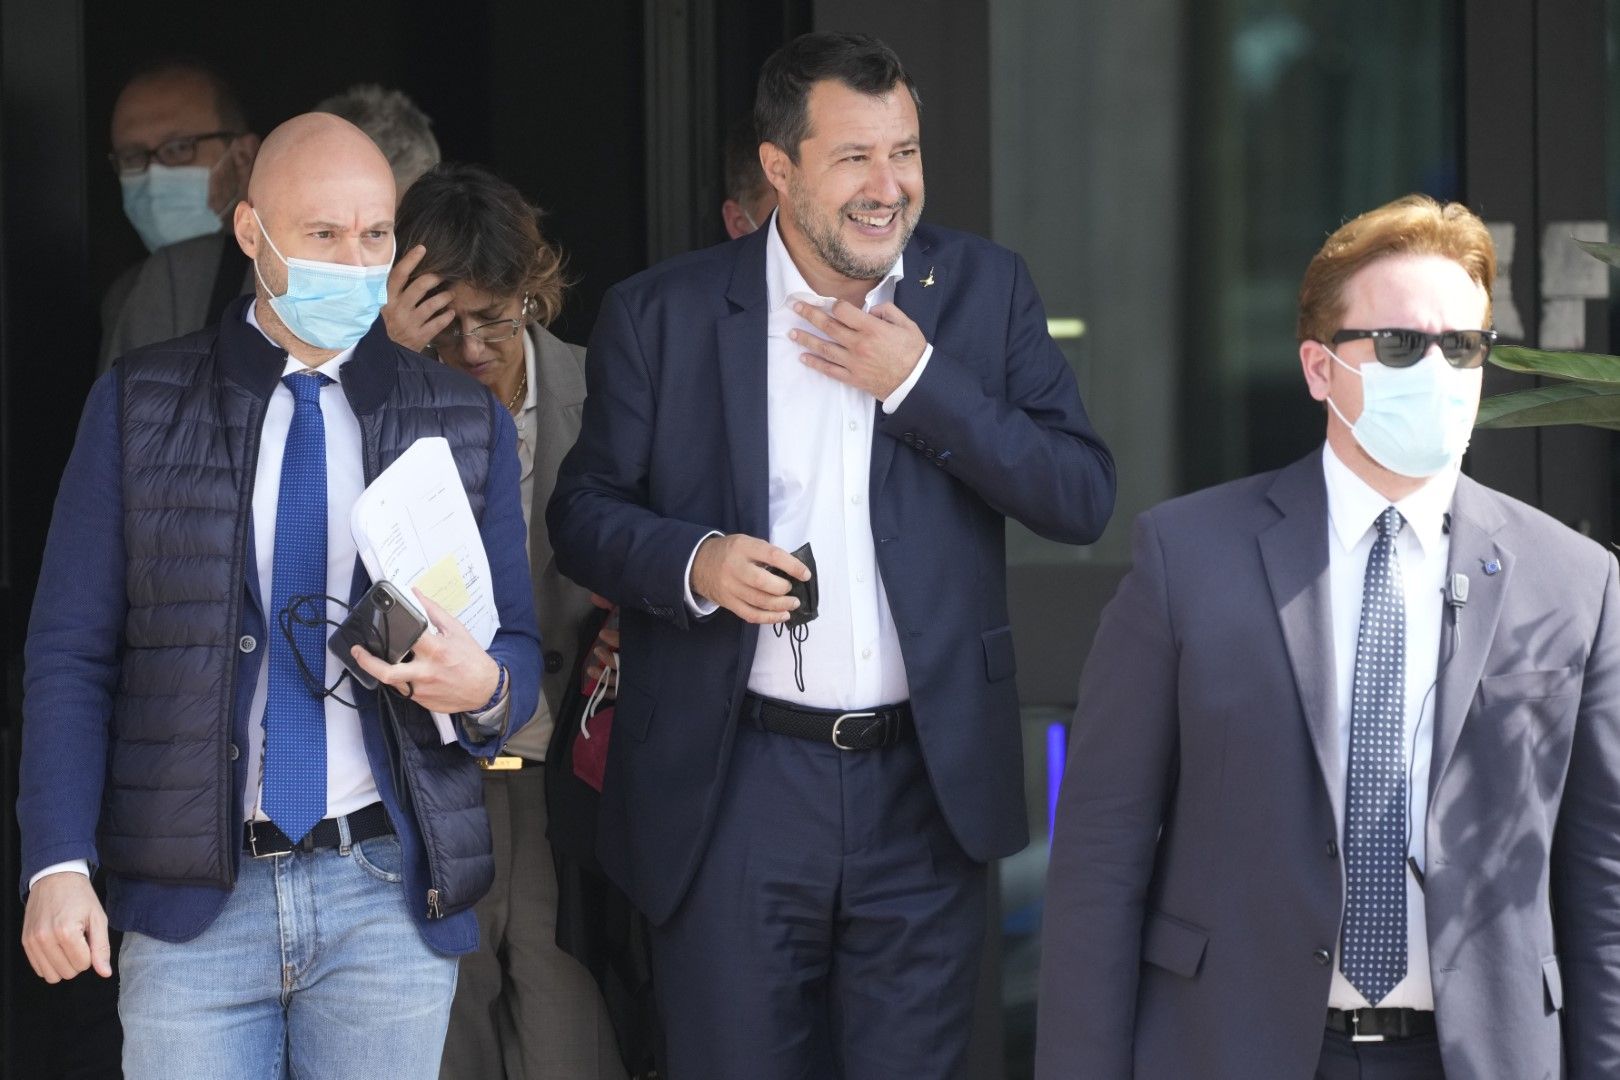 Матео Салвини напуска сградата на съда в Палермо, където срещу него започна дело по обвинение, че отказал на кораба "Оупън армс" да акостира в италианско пристанище